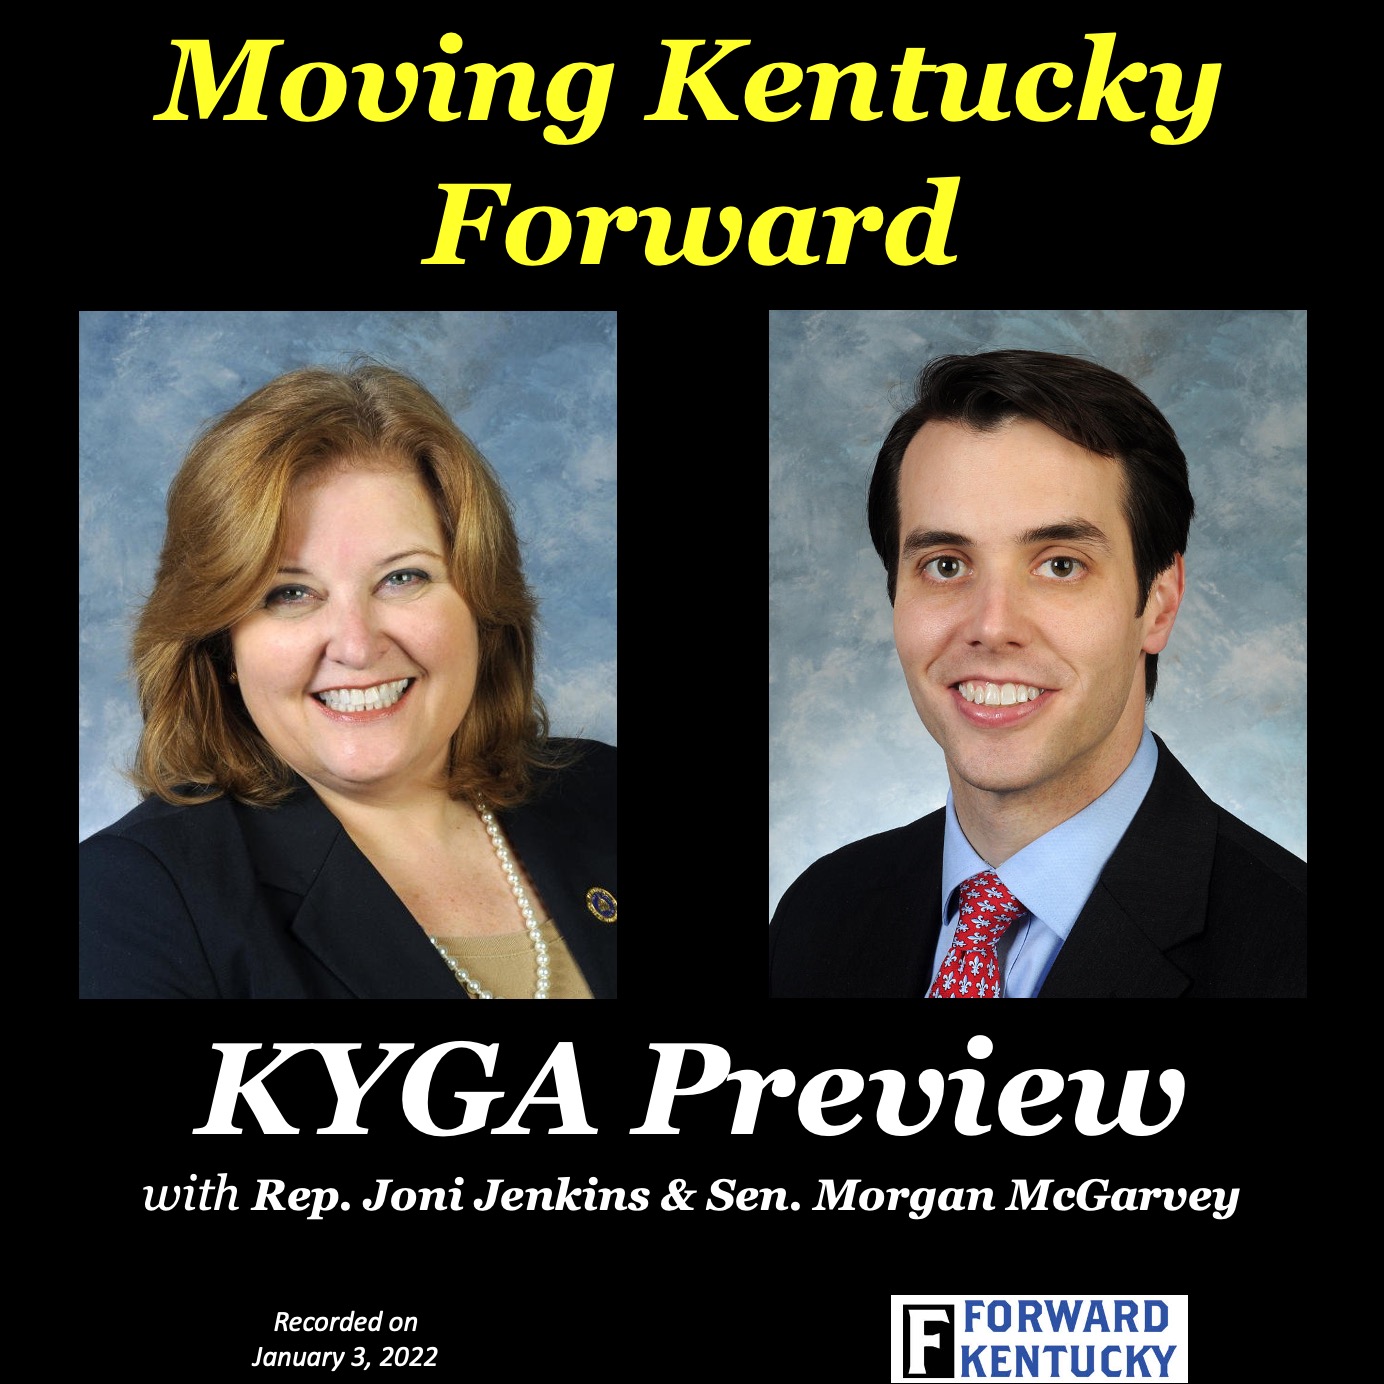 KYGA Preview with Joni Jenkins and Morgan McGarvey